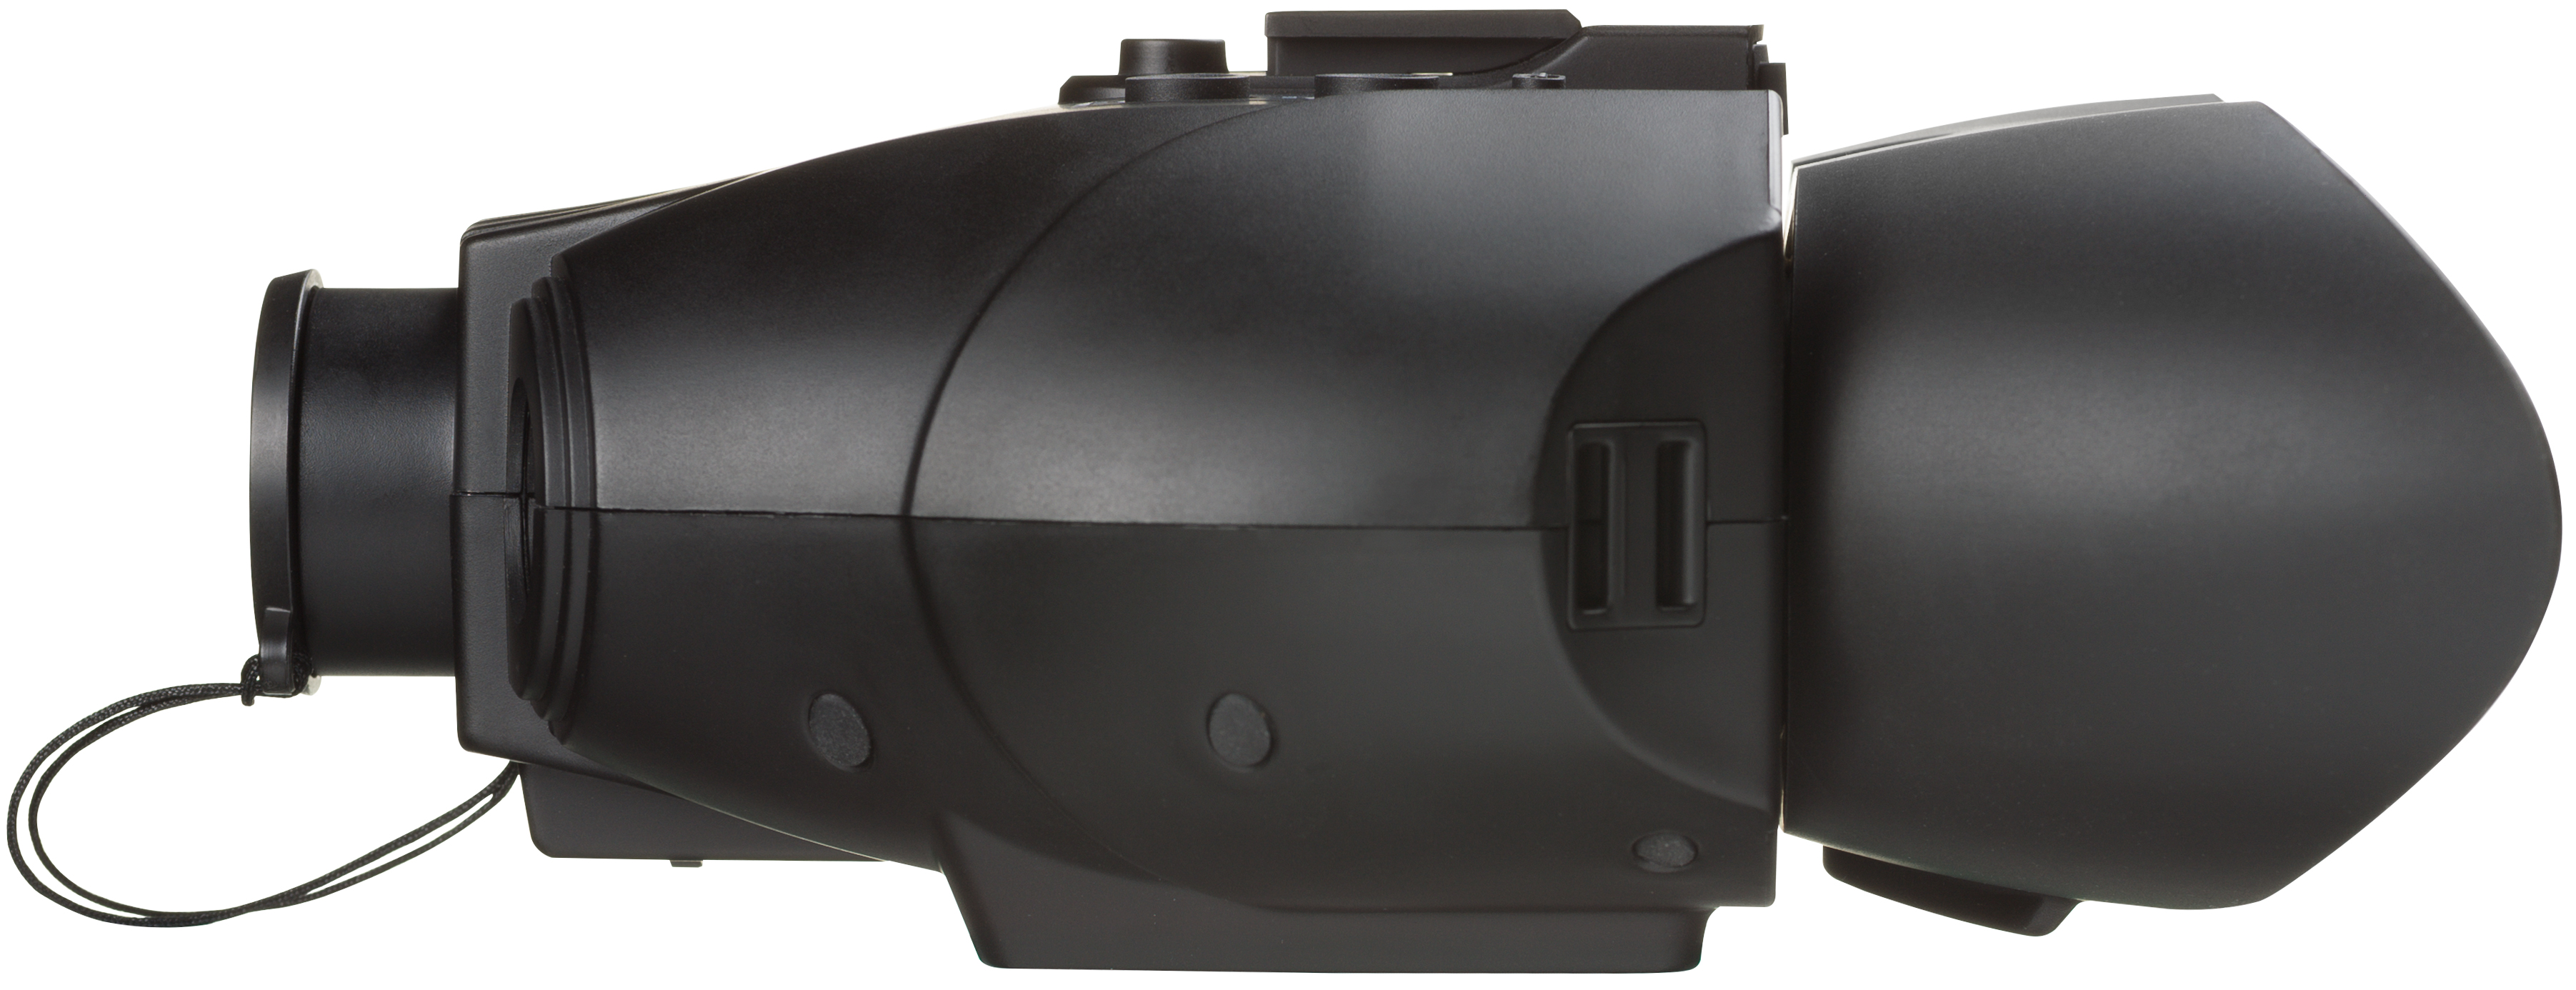 BRESSER Digital Nachtsichtgerät Binokular 3x mit Aufnahmefunktion